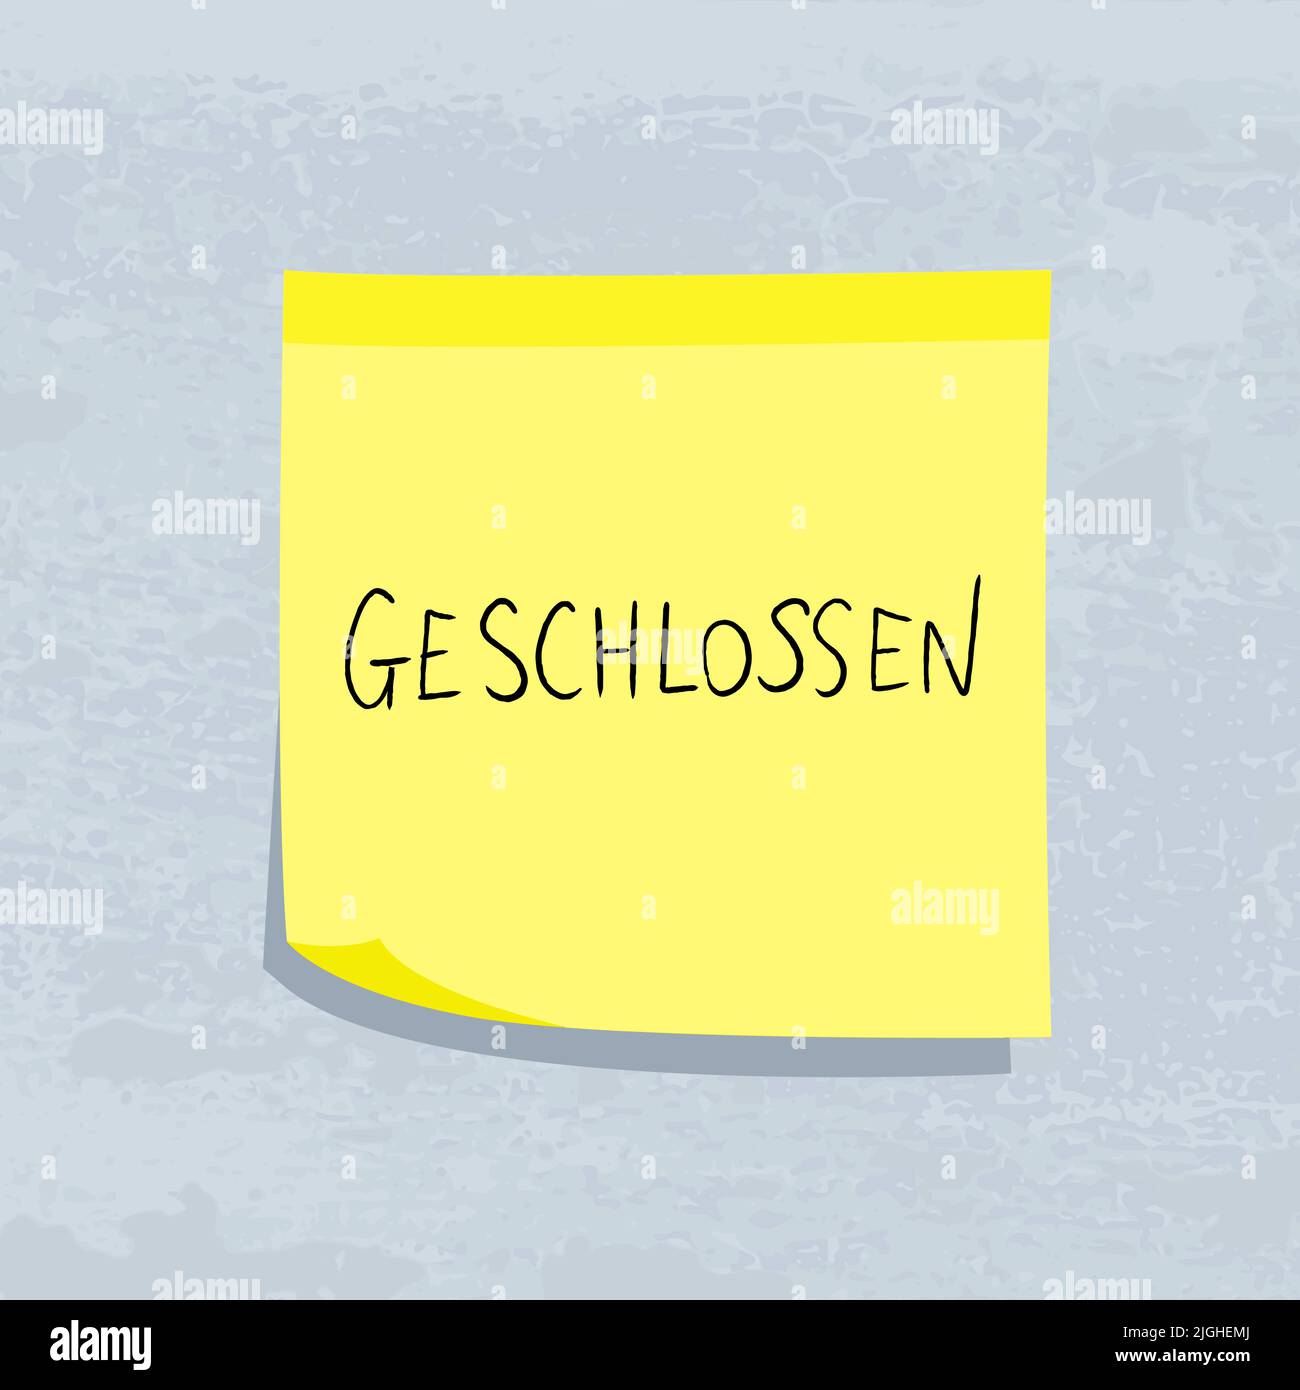 Geschlossen significa cerrado en lengua alemana. Mensaje de nota adhesiva amarilla. Cartel en papel. Ilustración del Vector